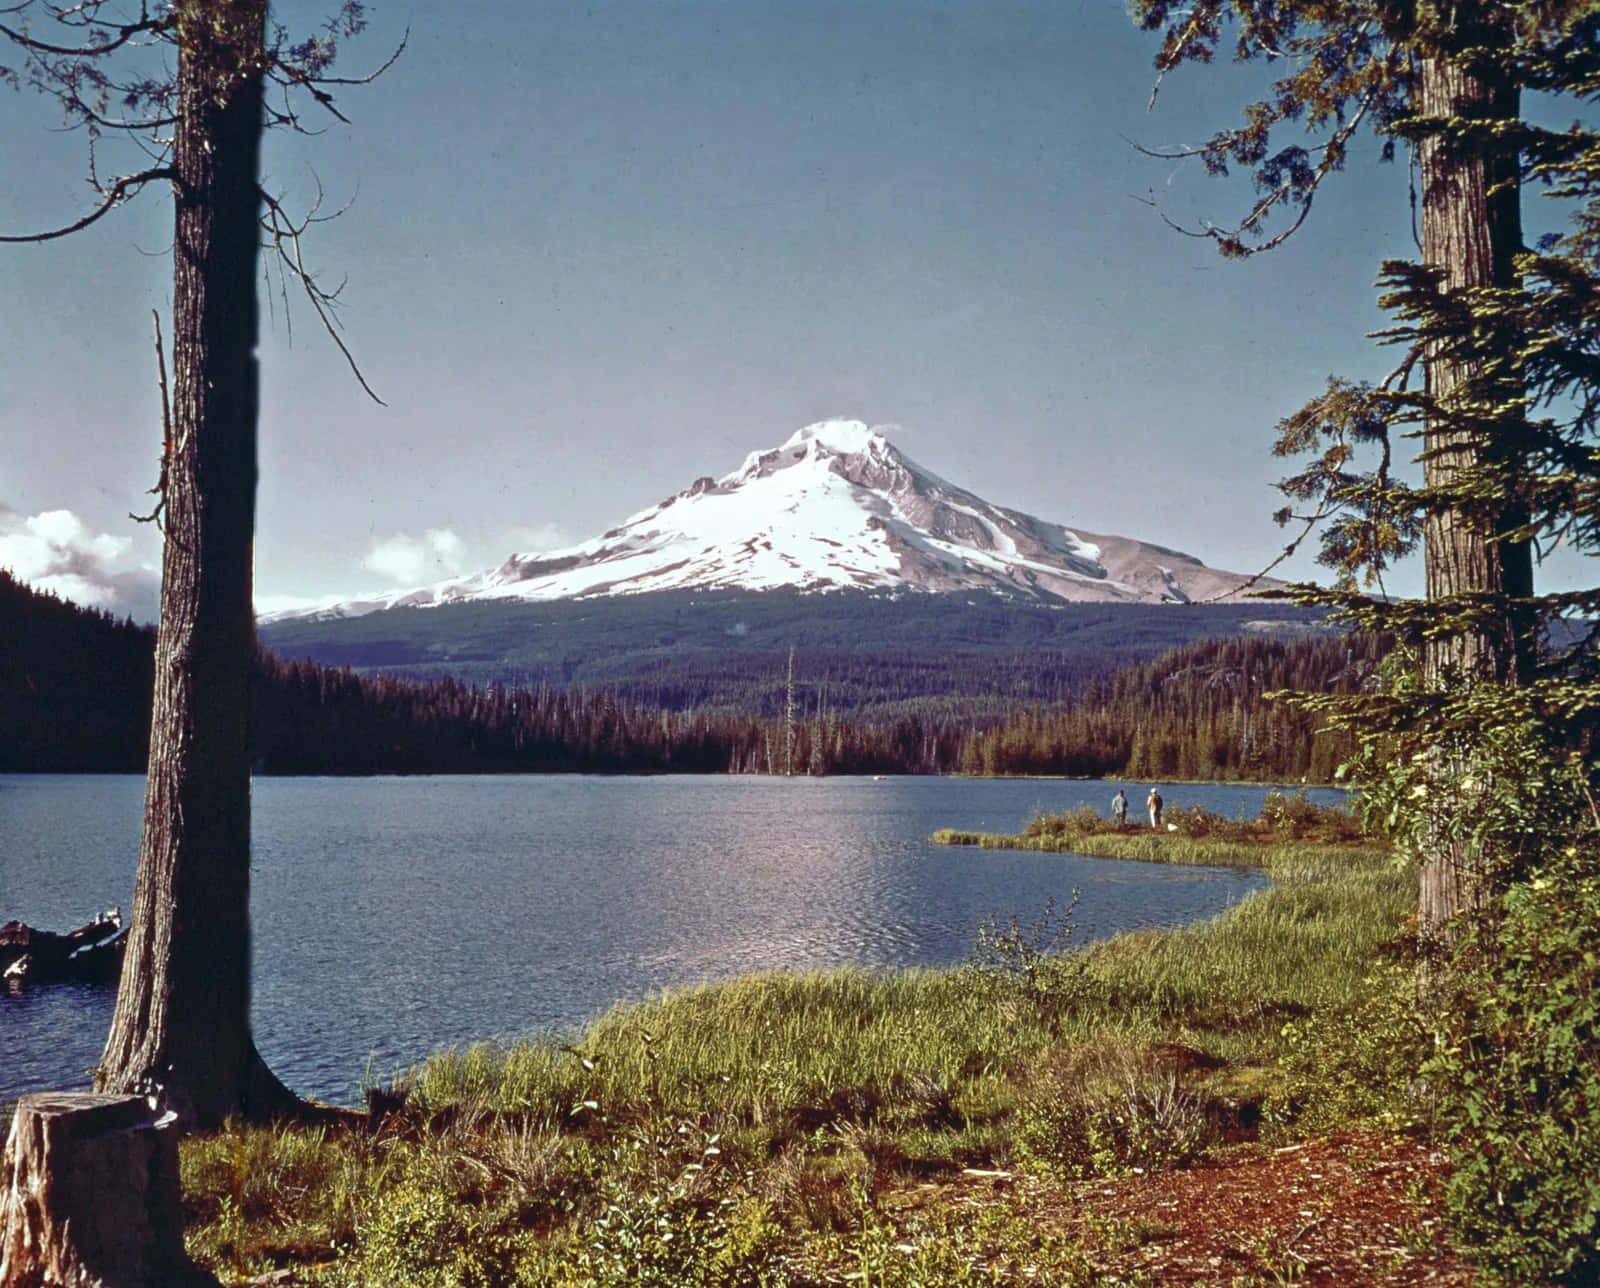 The beautiful Mount Hood in Oregon